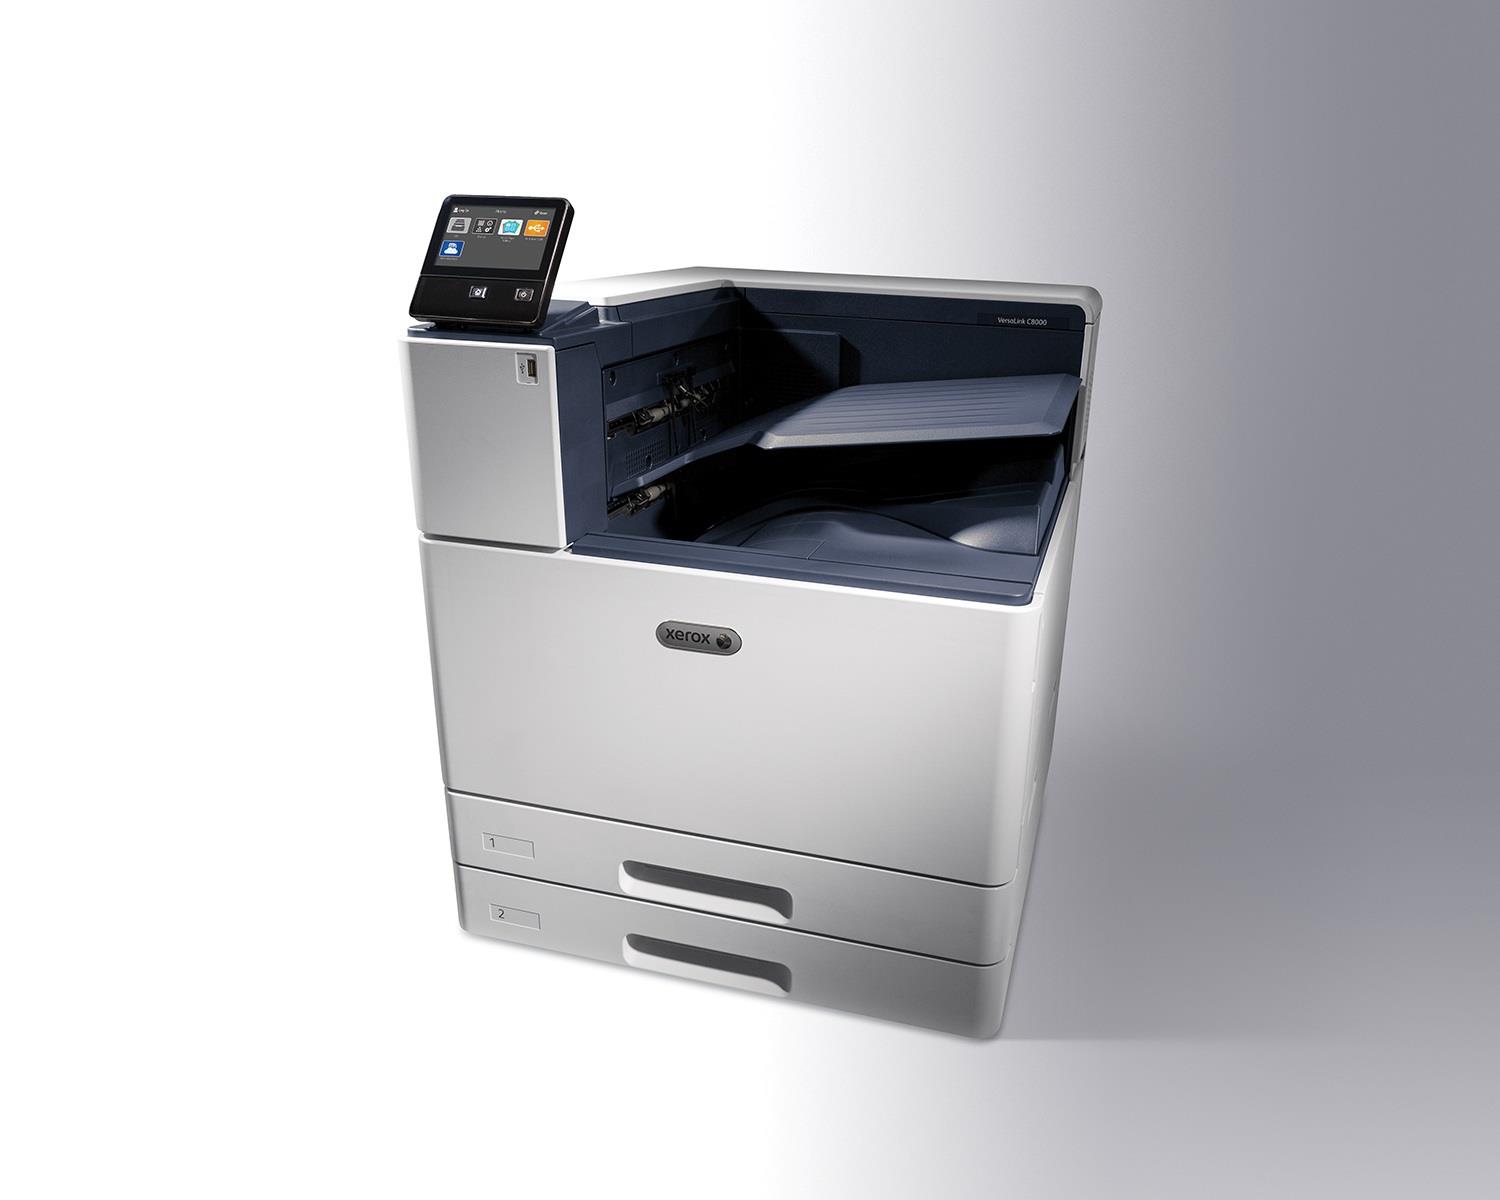 Принтер А3 Xerox VersaLink C8000DT